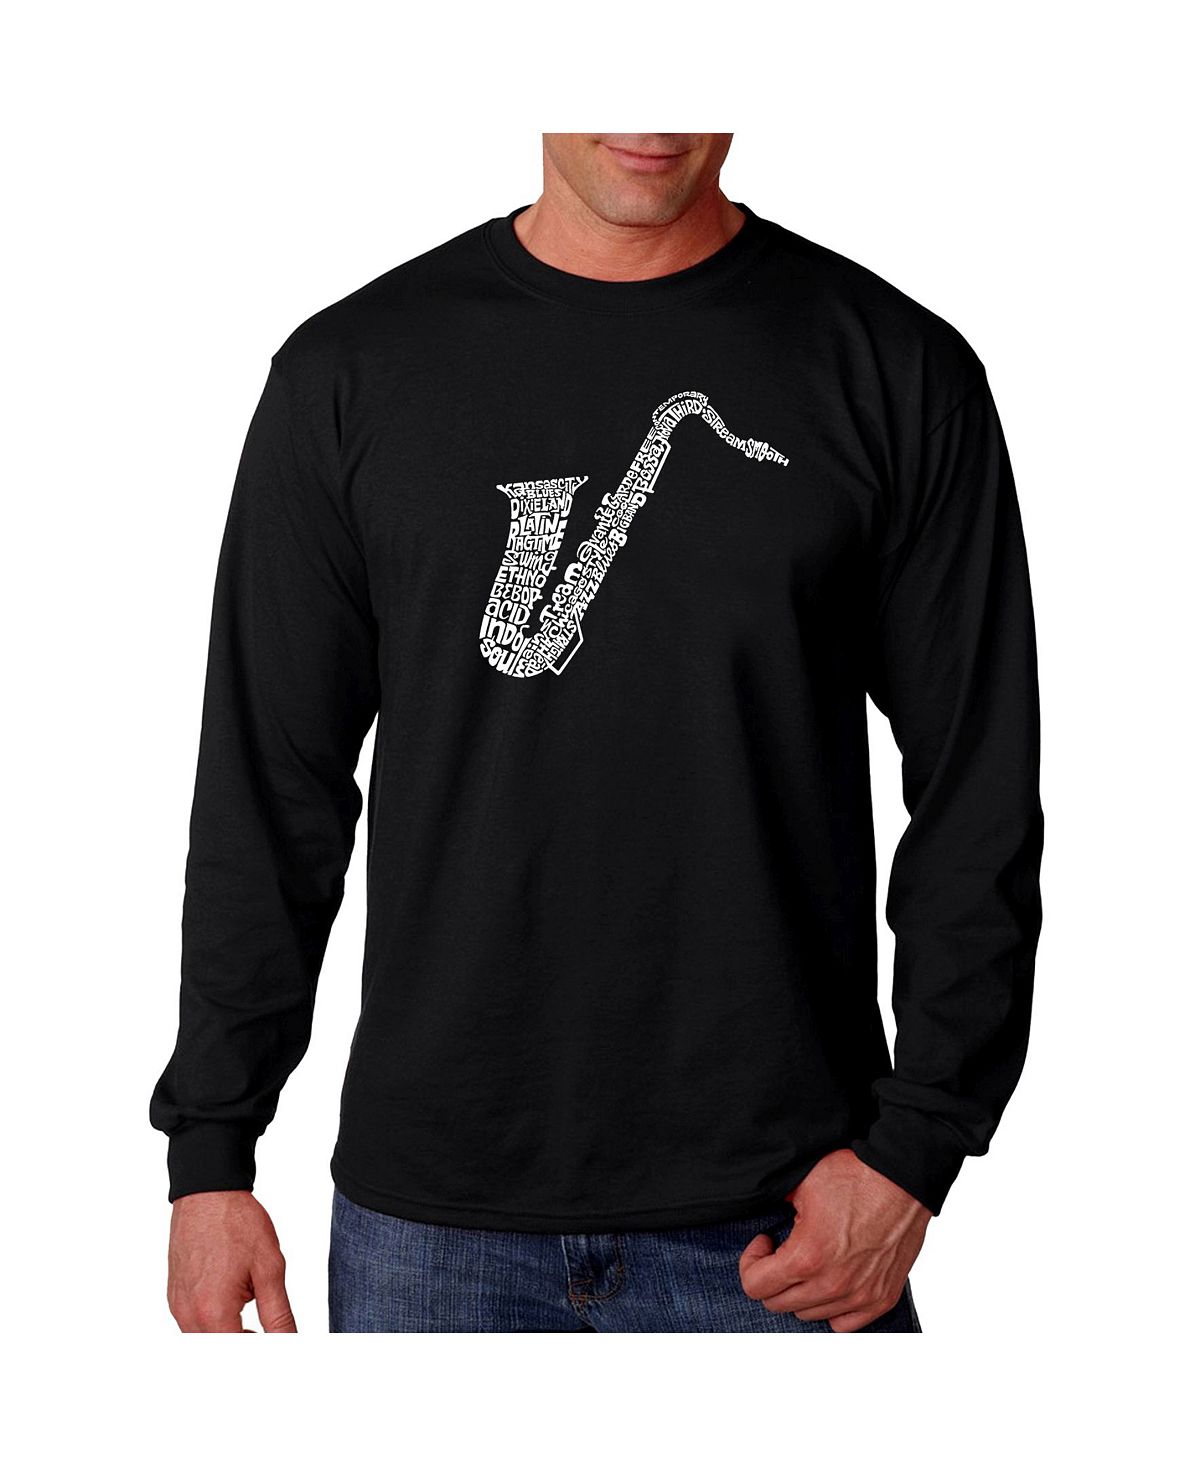 Мужская футболка с длинным рукавом word art - саксофон LA Pop Art, черный мужская футболка джаз музыкант jazz саксофон xl белый